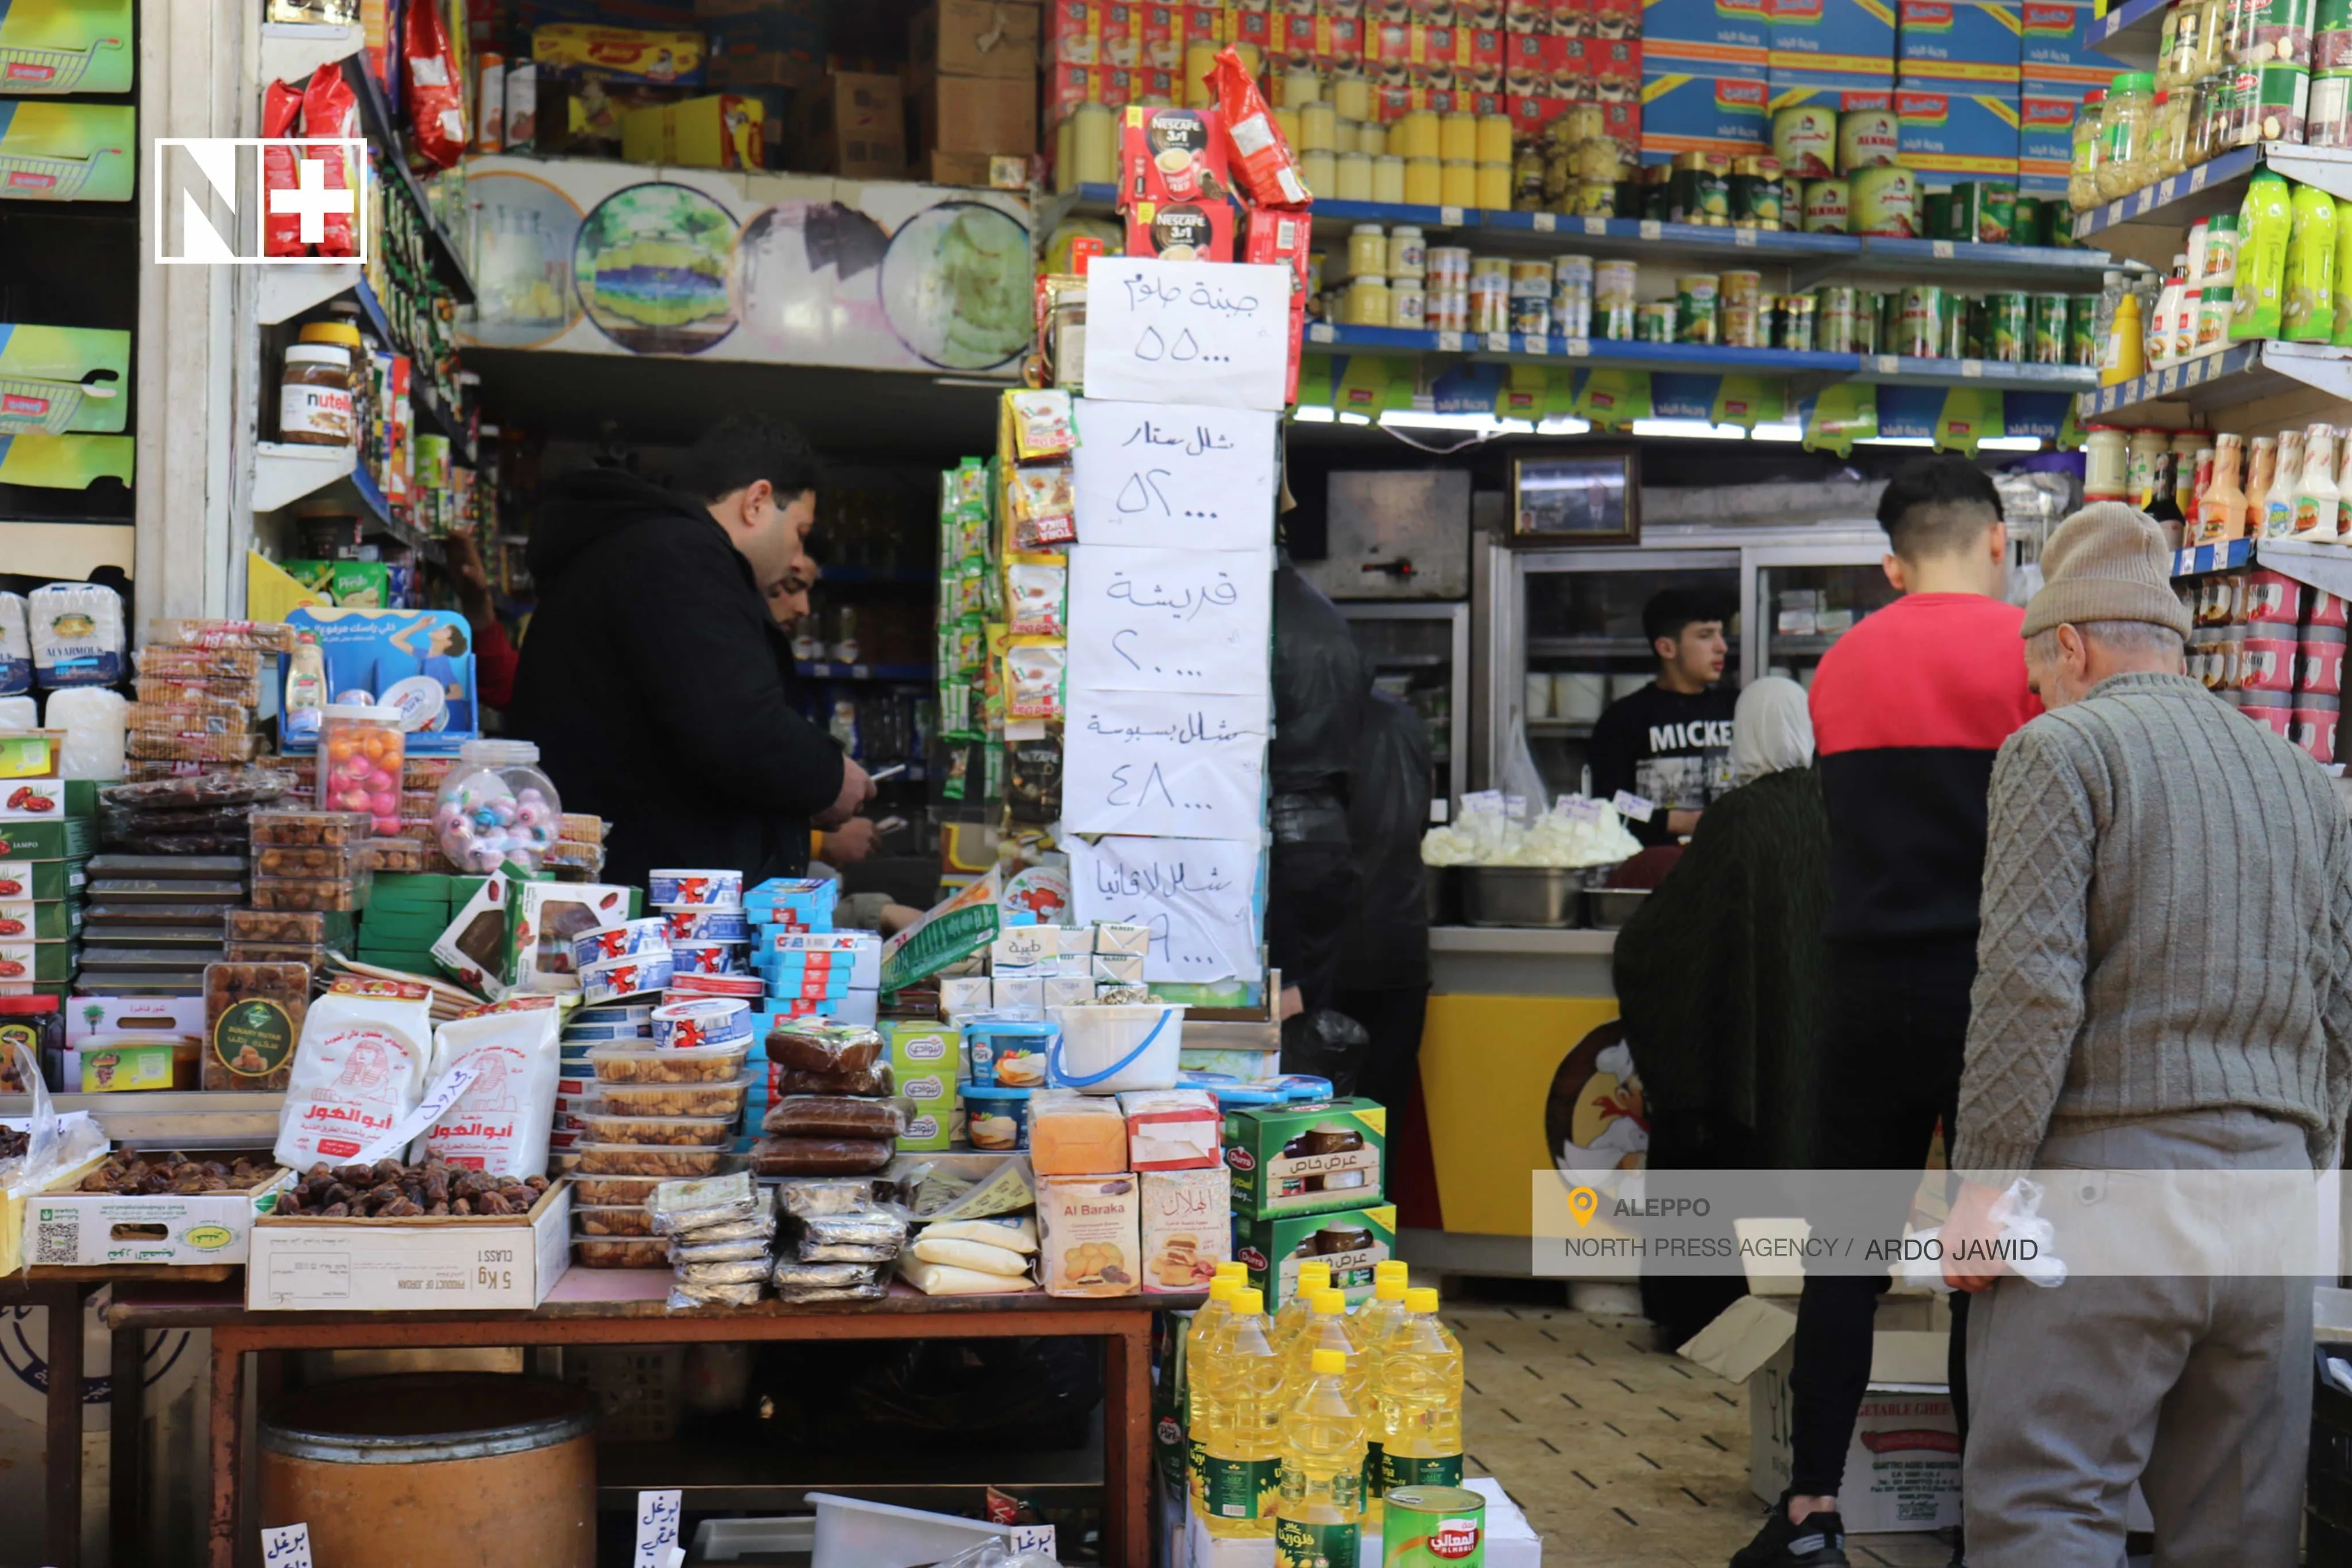 النظام بصدد رفع نشرة المأكولات.. مسؤولون وخبراء يقدرون نسب ارتفاع الأسعار وتدهور المعيشية بسوريا